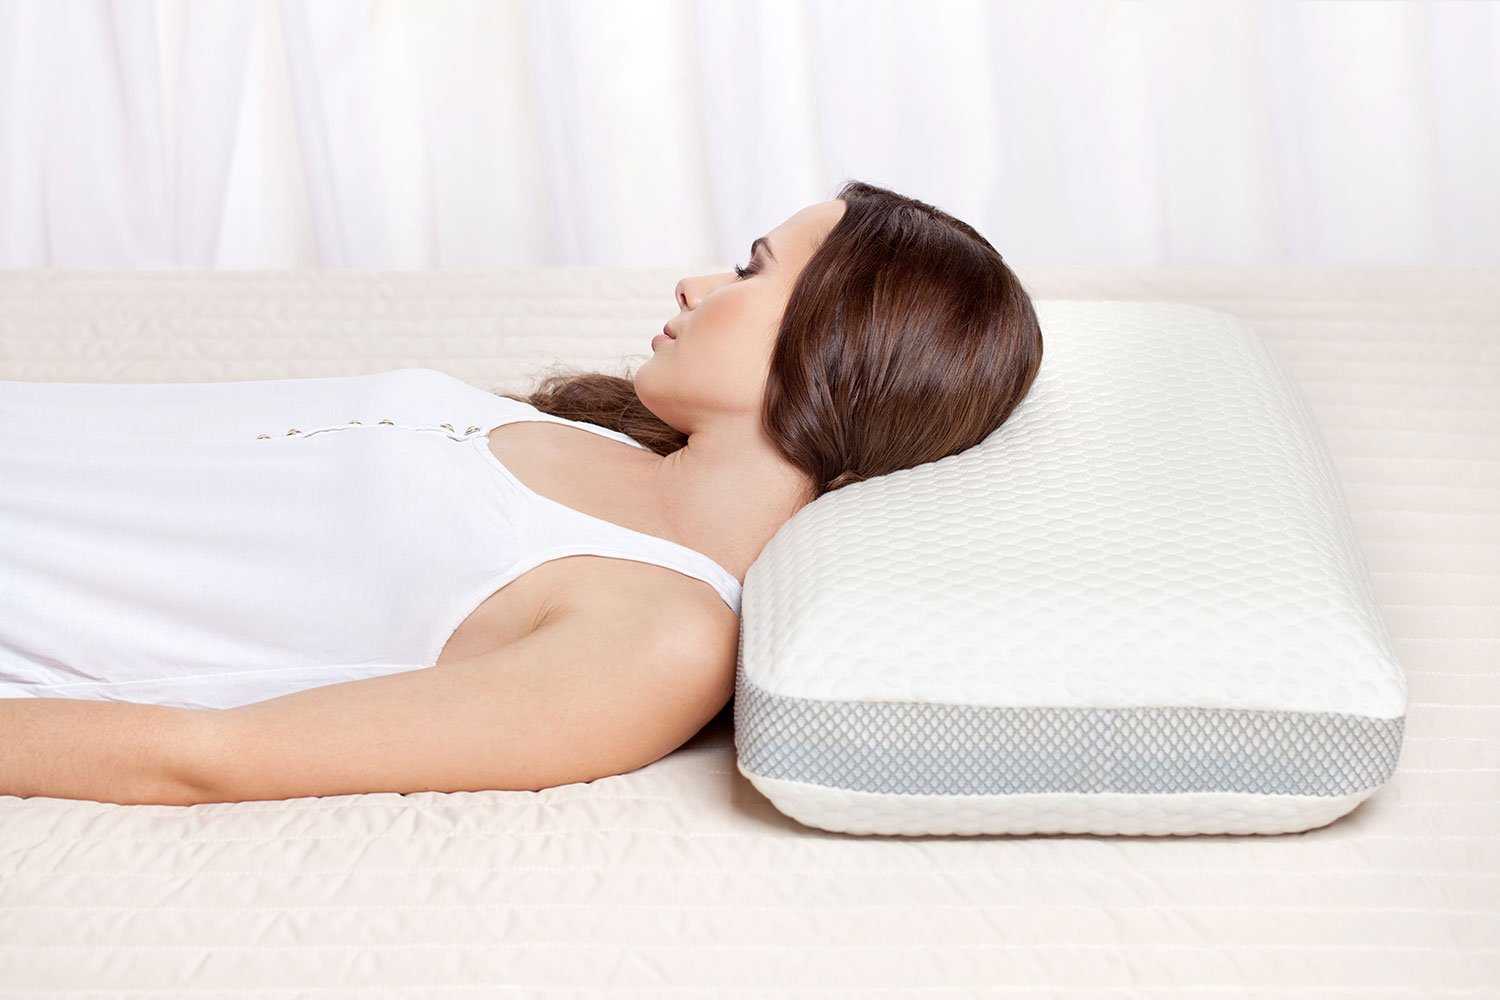 Лучшие подушки для сна - как выбрать праильно?